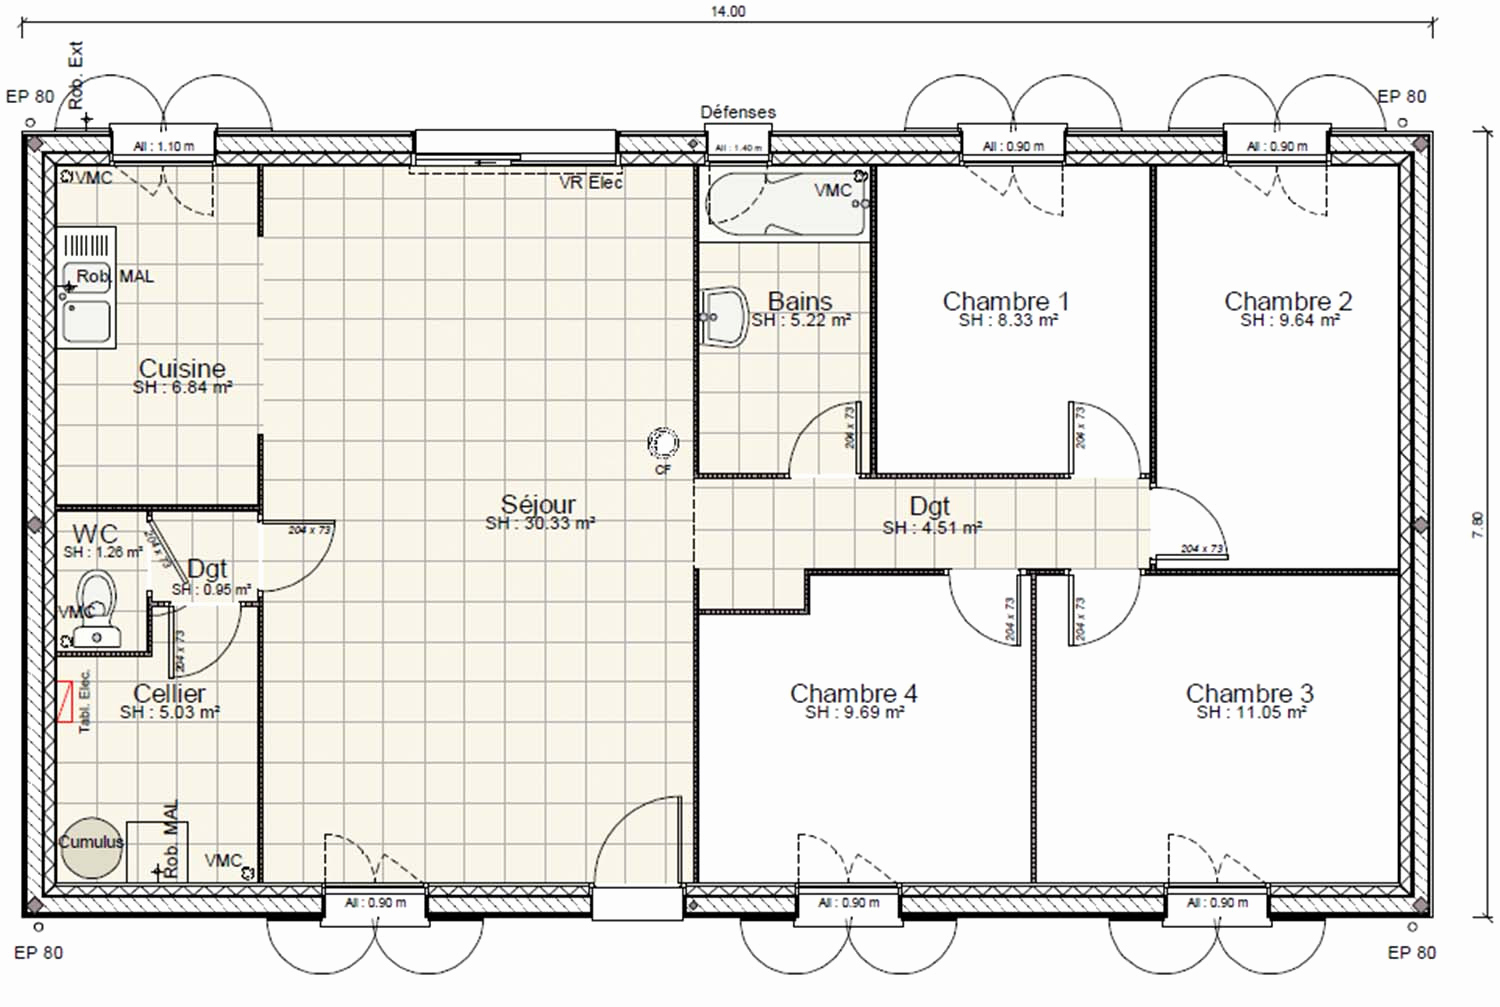 Plan de maison gratuit 4 chambres pdf